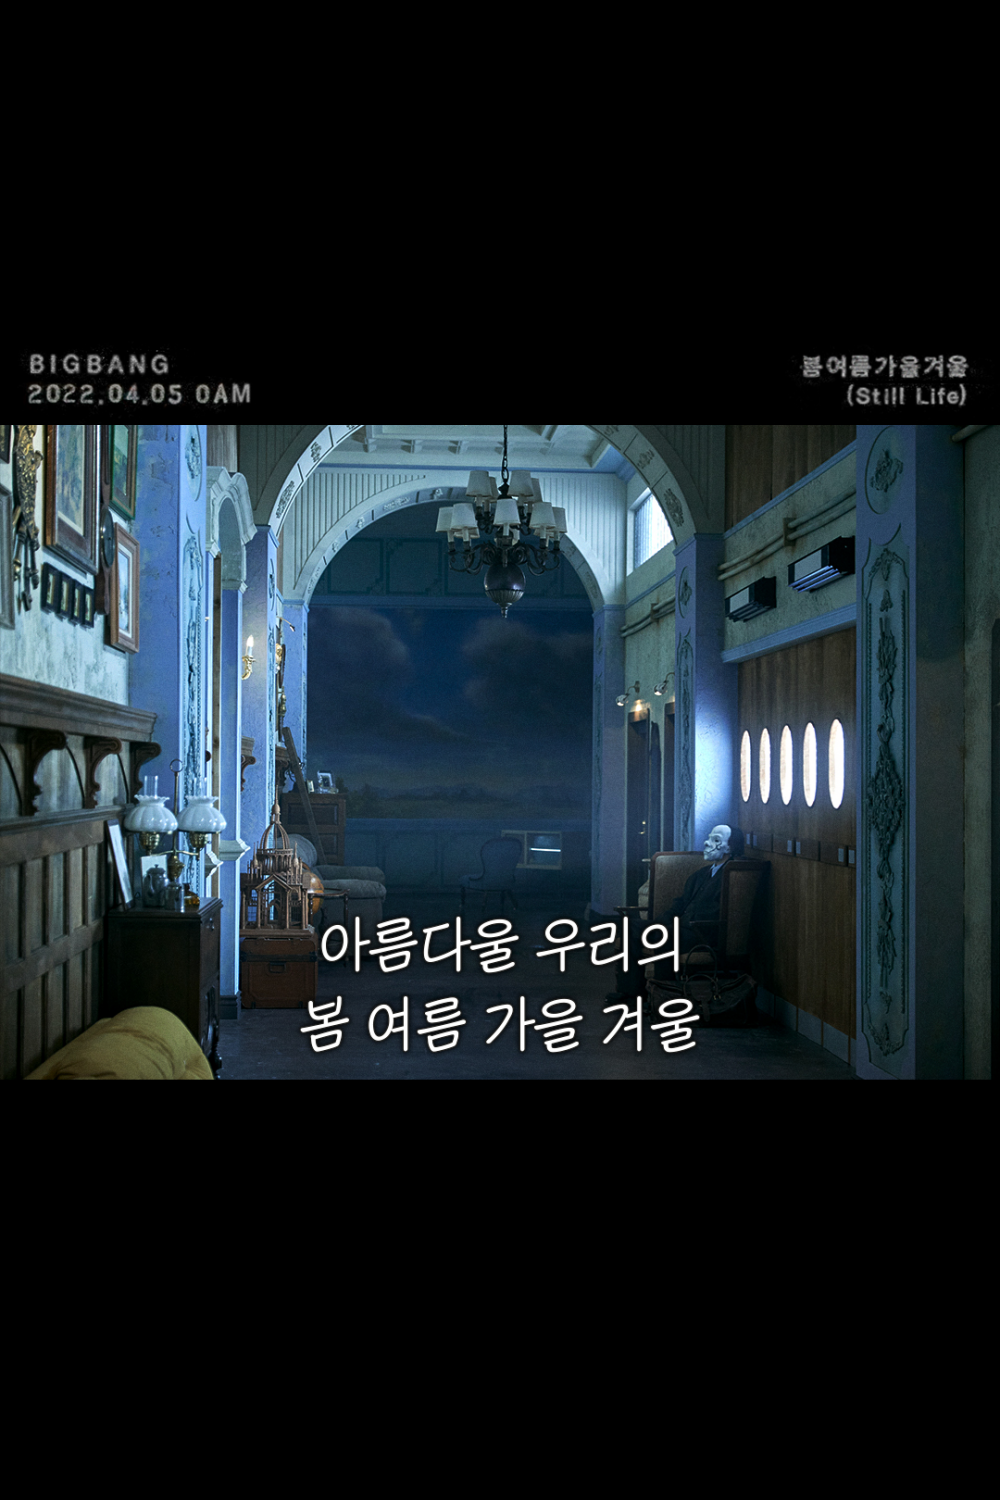 [Камбэк] Big Bang сингл "Still Life": музыкальный клип